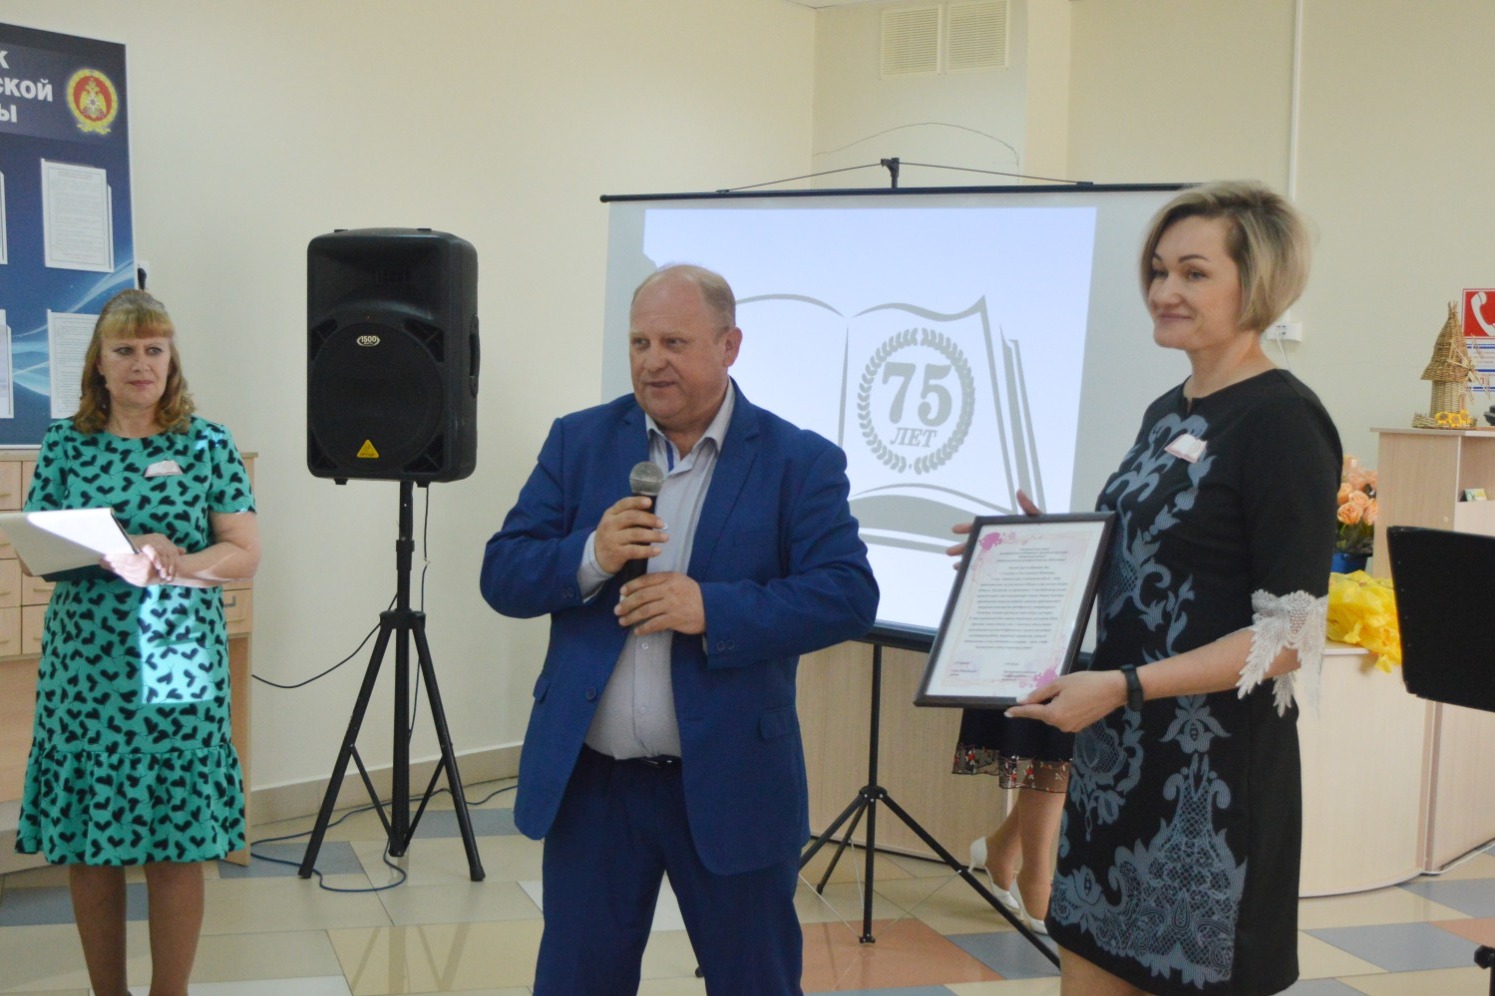 Сергей Ефанов вручает поздравительный адрес директору межпоселенческой централизованной библиотеки Ирине Носиковой